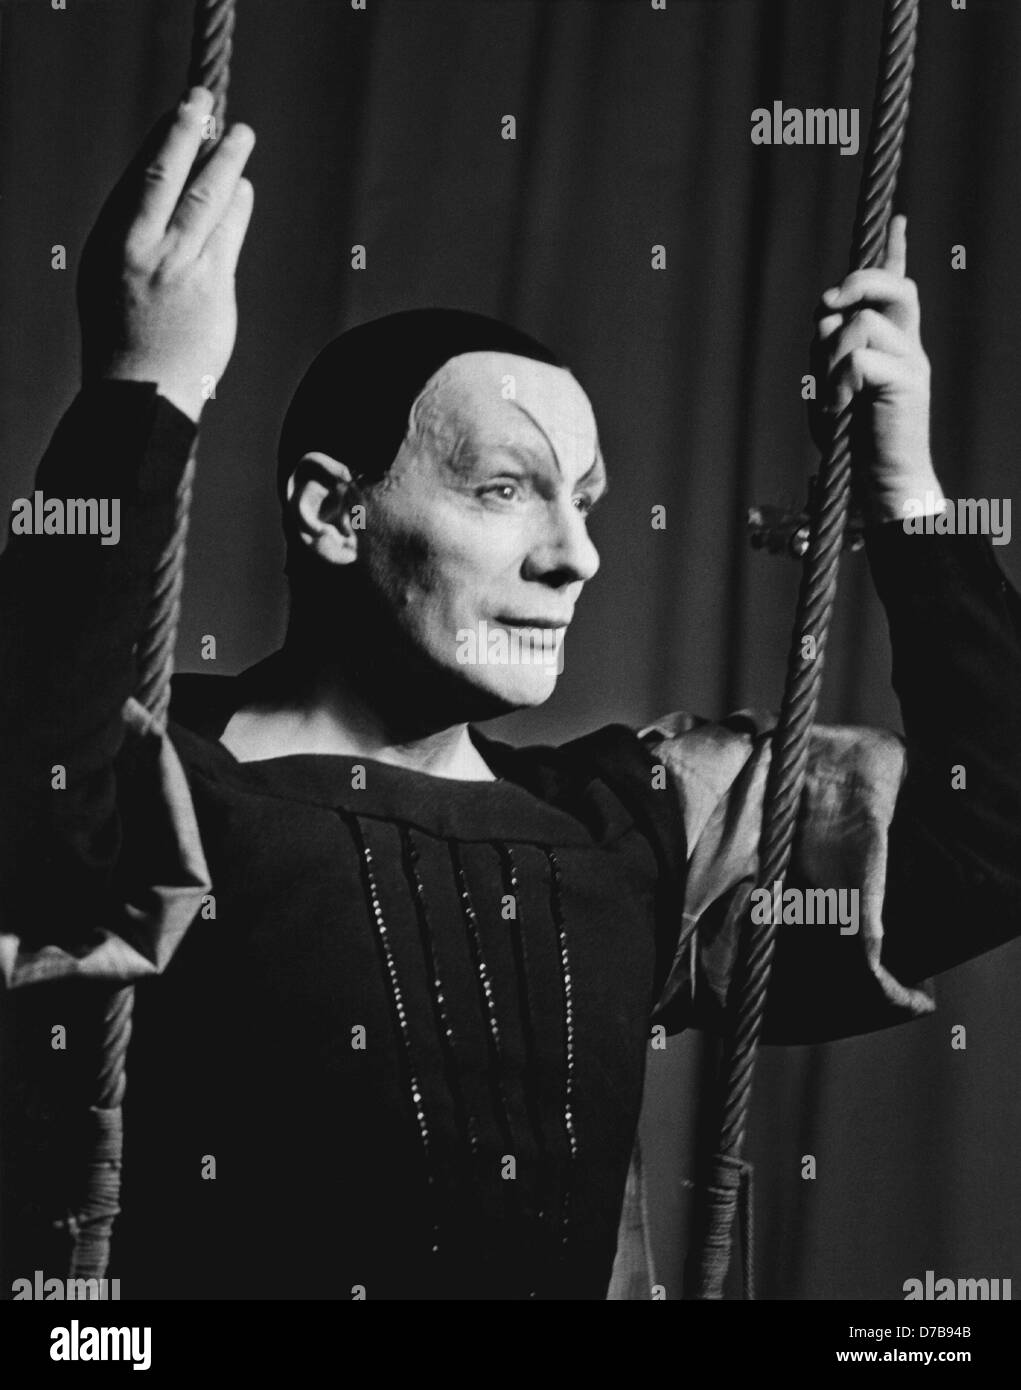 Attore tedesco, direttore e teatro intendant Gustaf Gründgens come 'Mephisto' nel Faust II nel 1959. Egli era nato il 22 dicembre nel 1899 a Duesseldorf e morì a causa di un incidente il 7 ottobre 1963 in un hotel a Manila nelle Filippine. Foto Stock